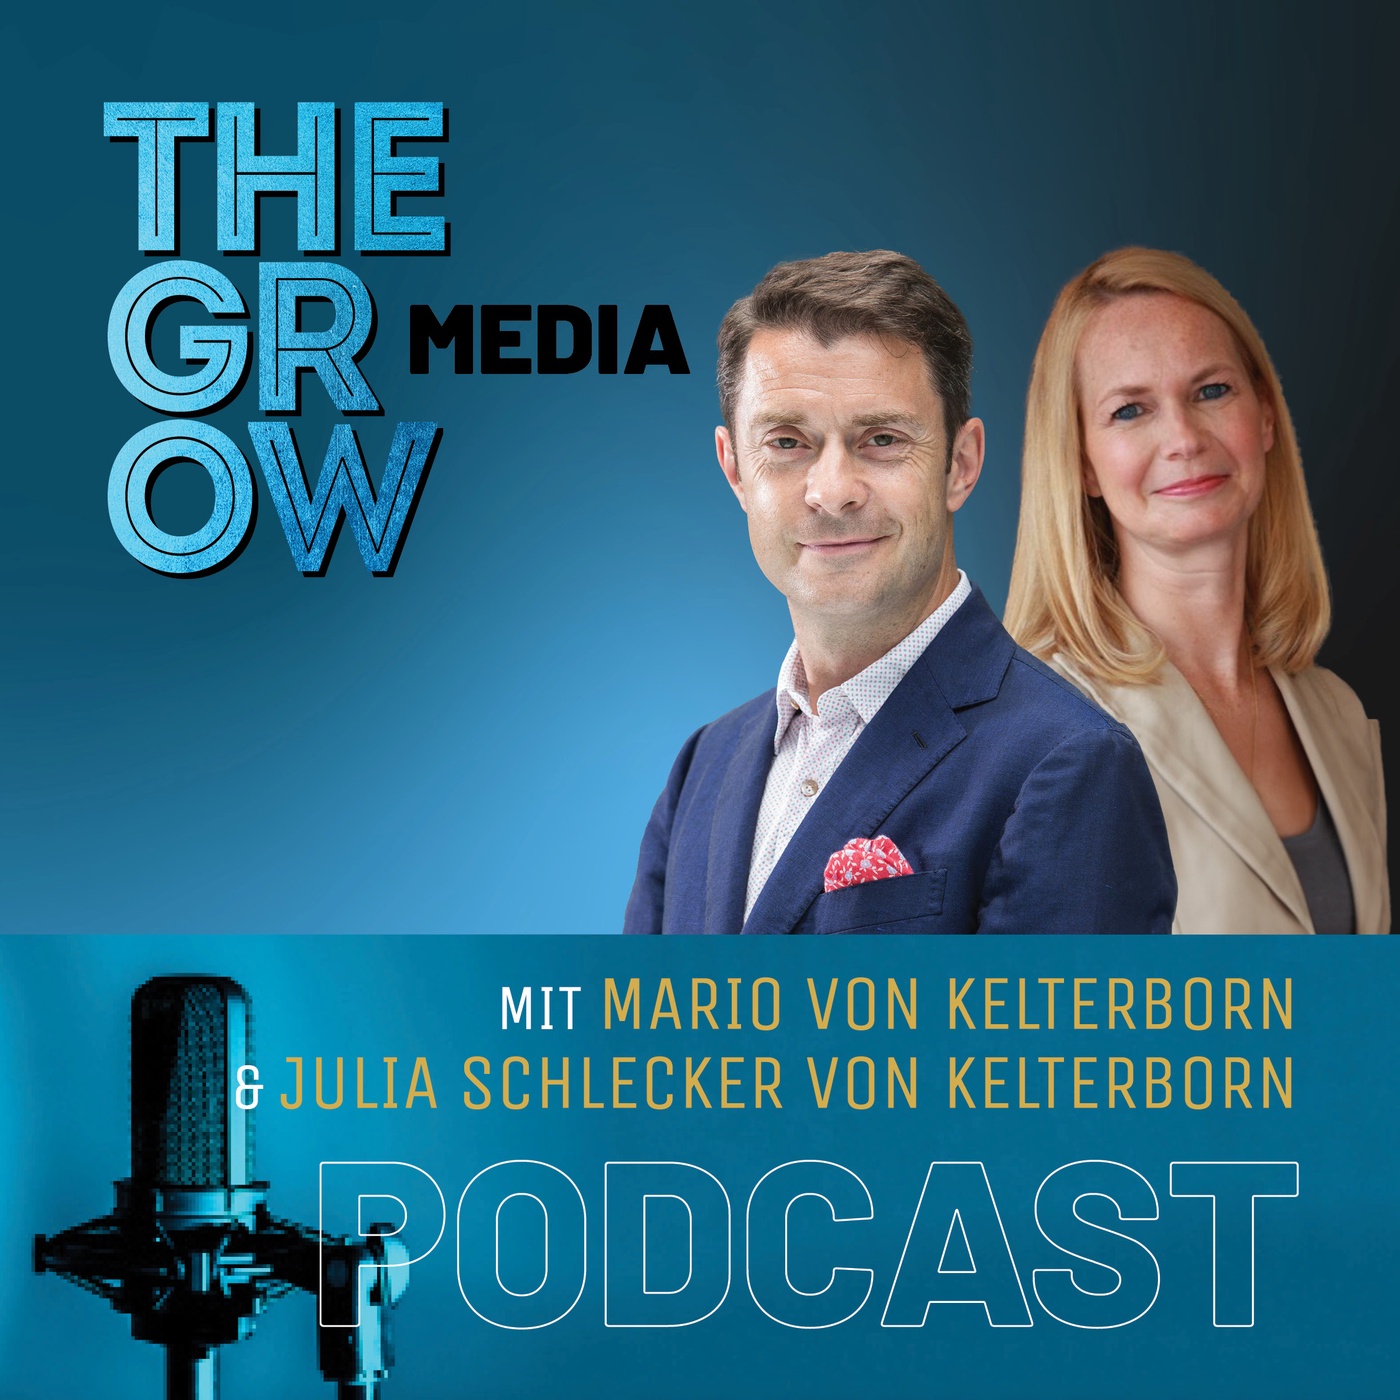 Mario von Kelterborn & Julia Schlecker von Kelterborn📱